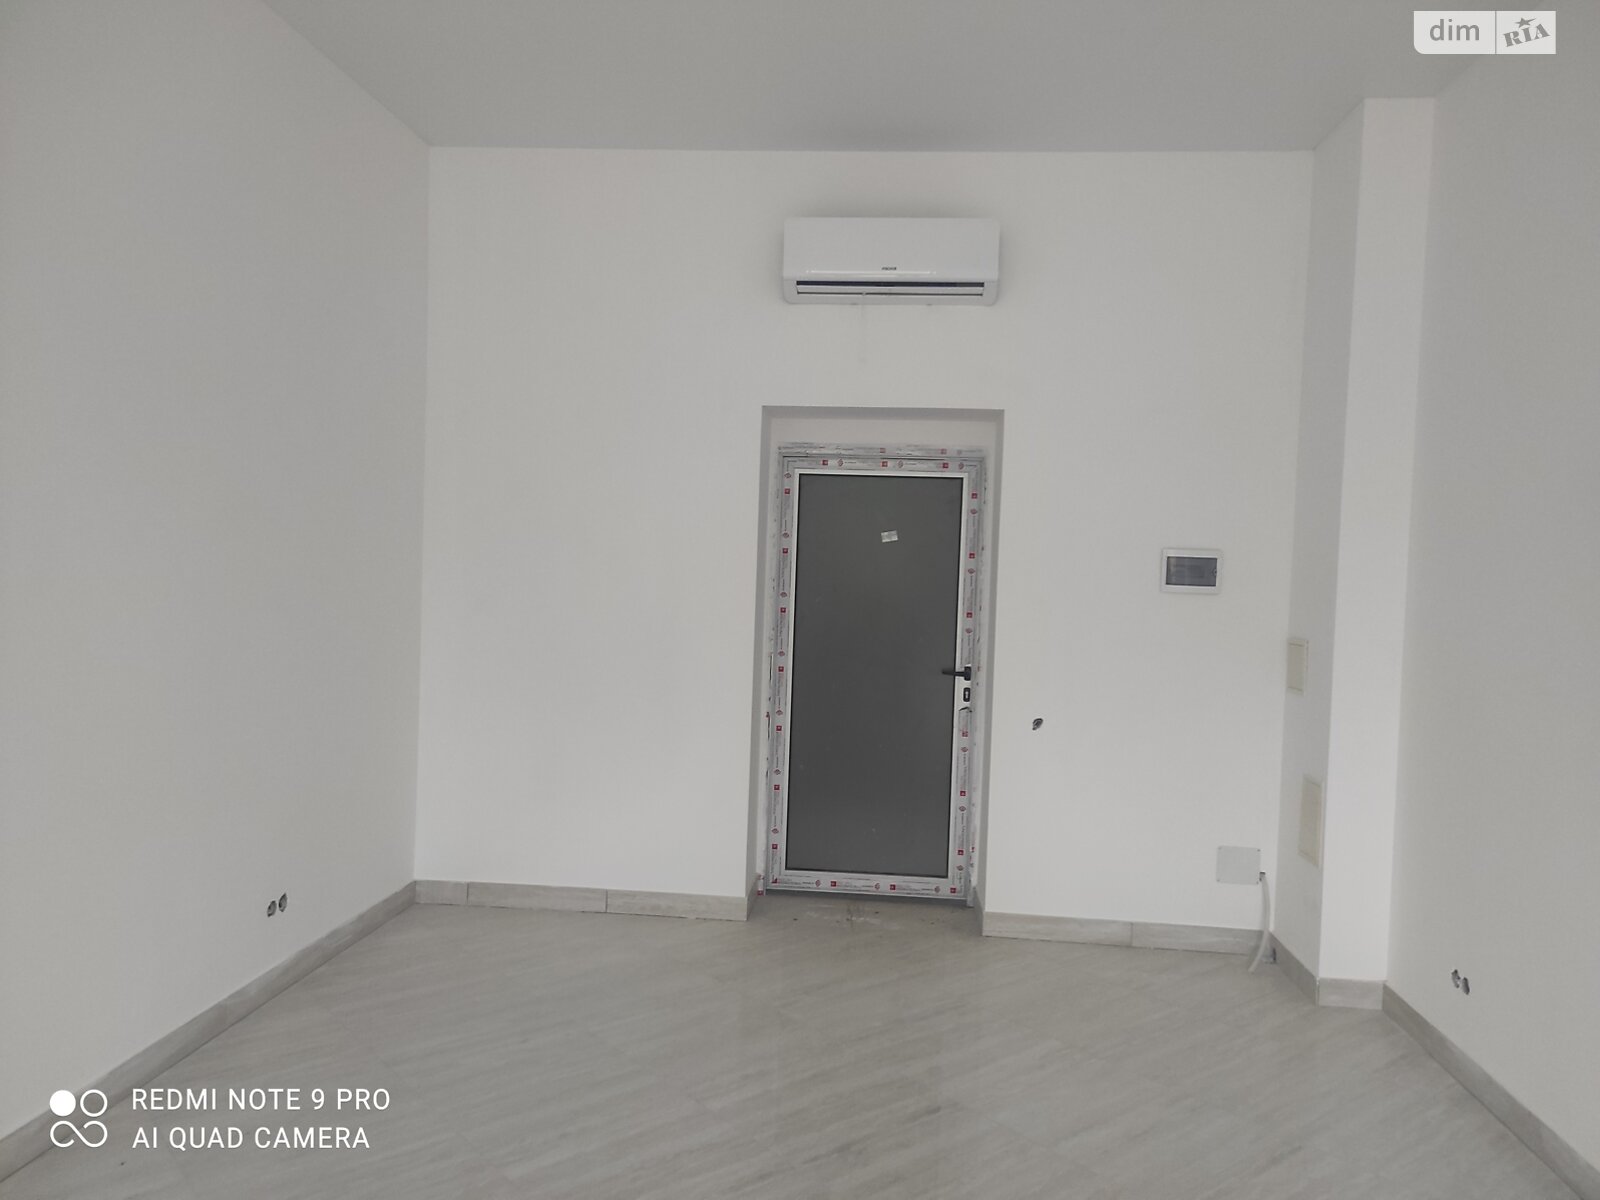 Аренда офисного помещения в Виннице, Матроса Кошки улица 10, помещений - 1, этаж - 2 фото 1